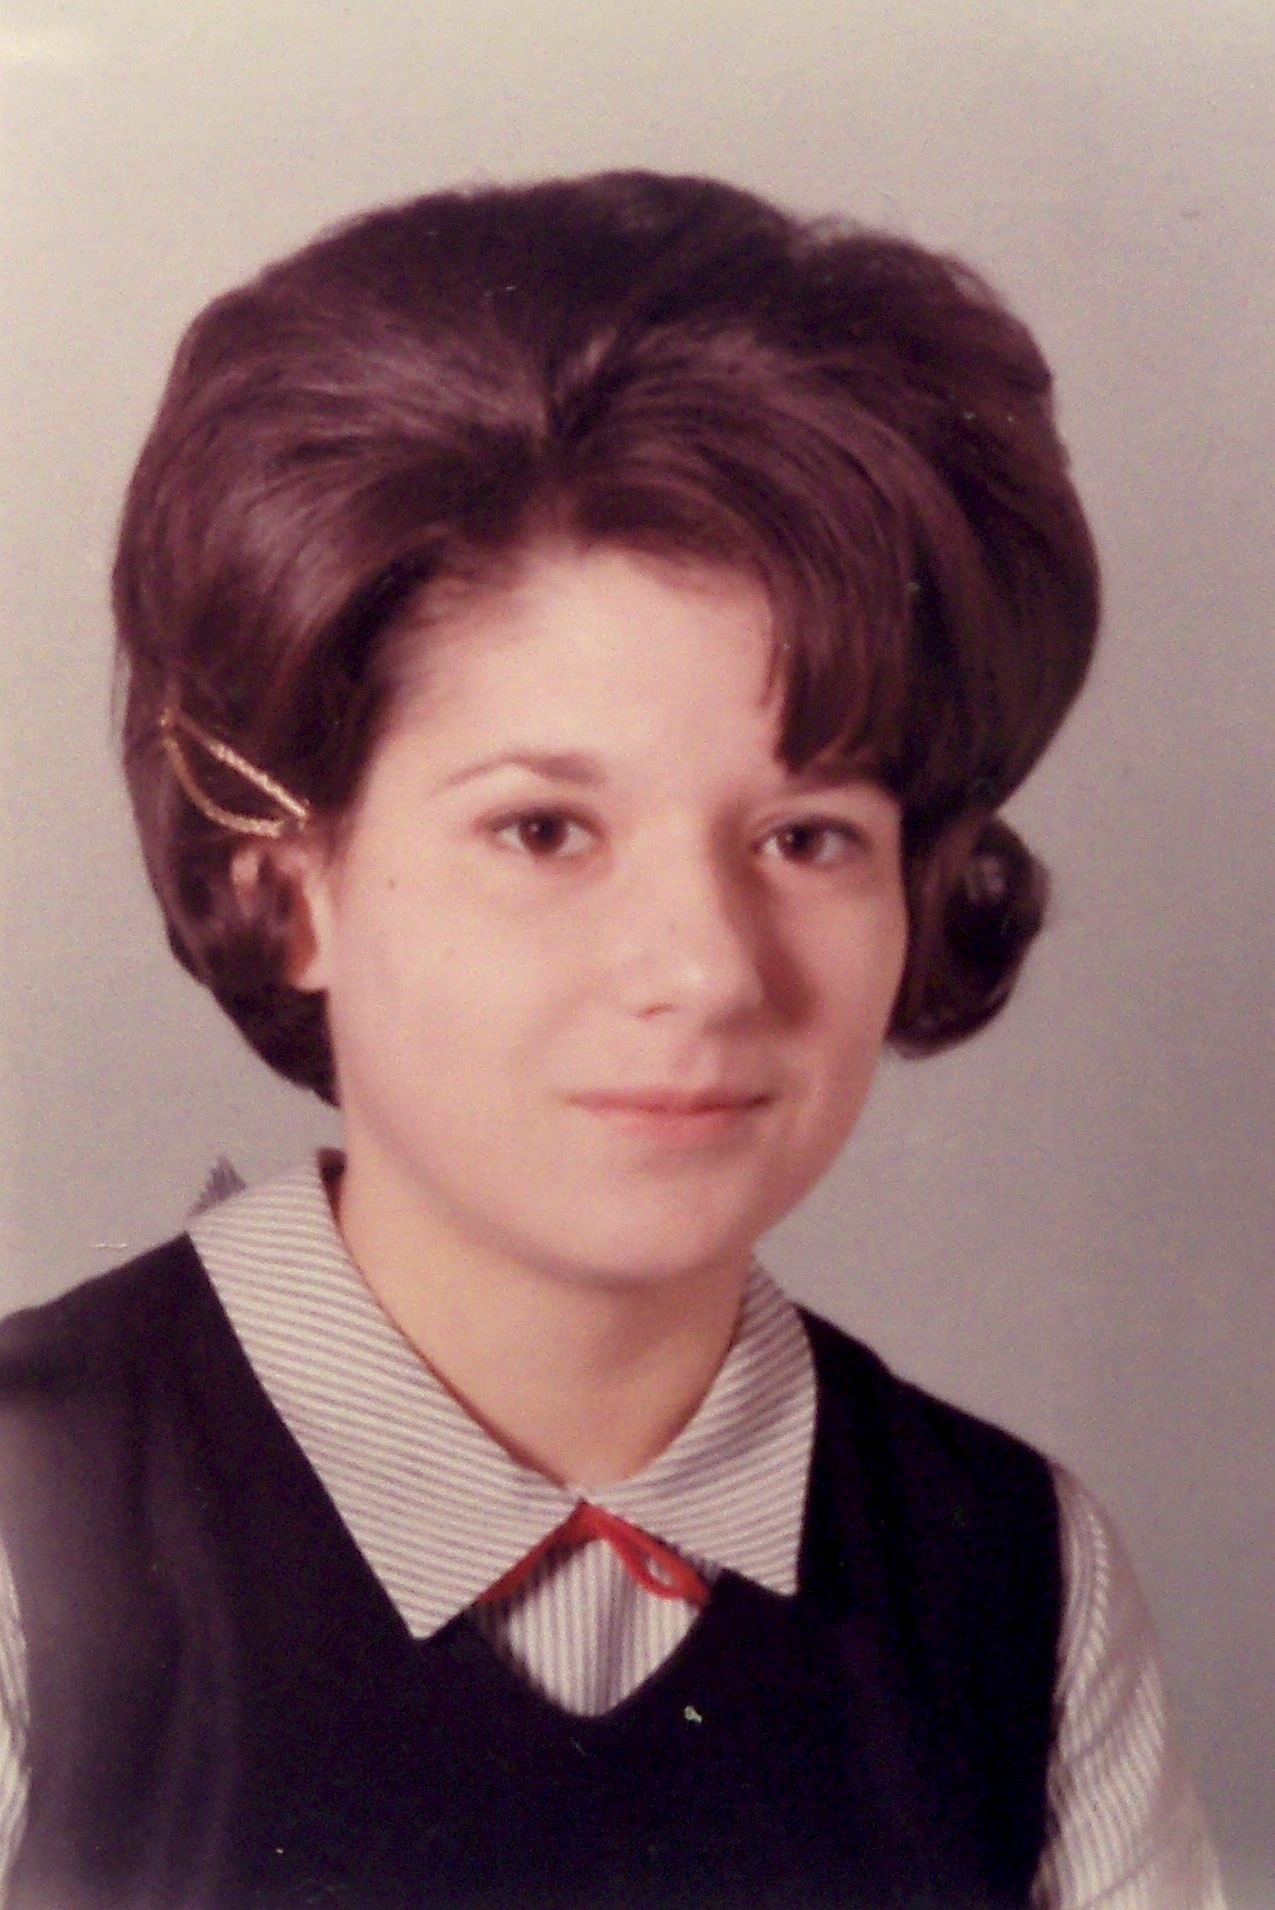 School girl, 1960's TX or LA